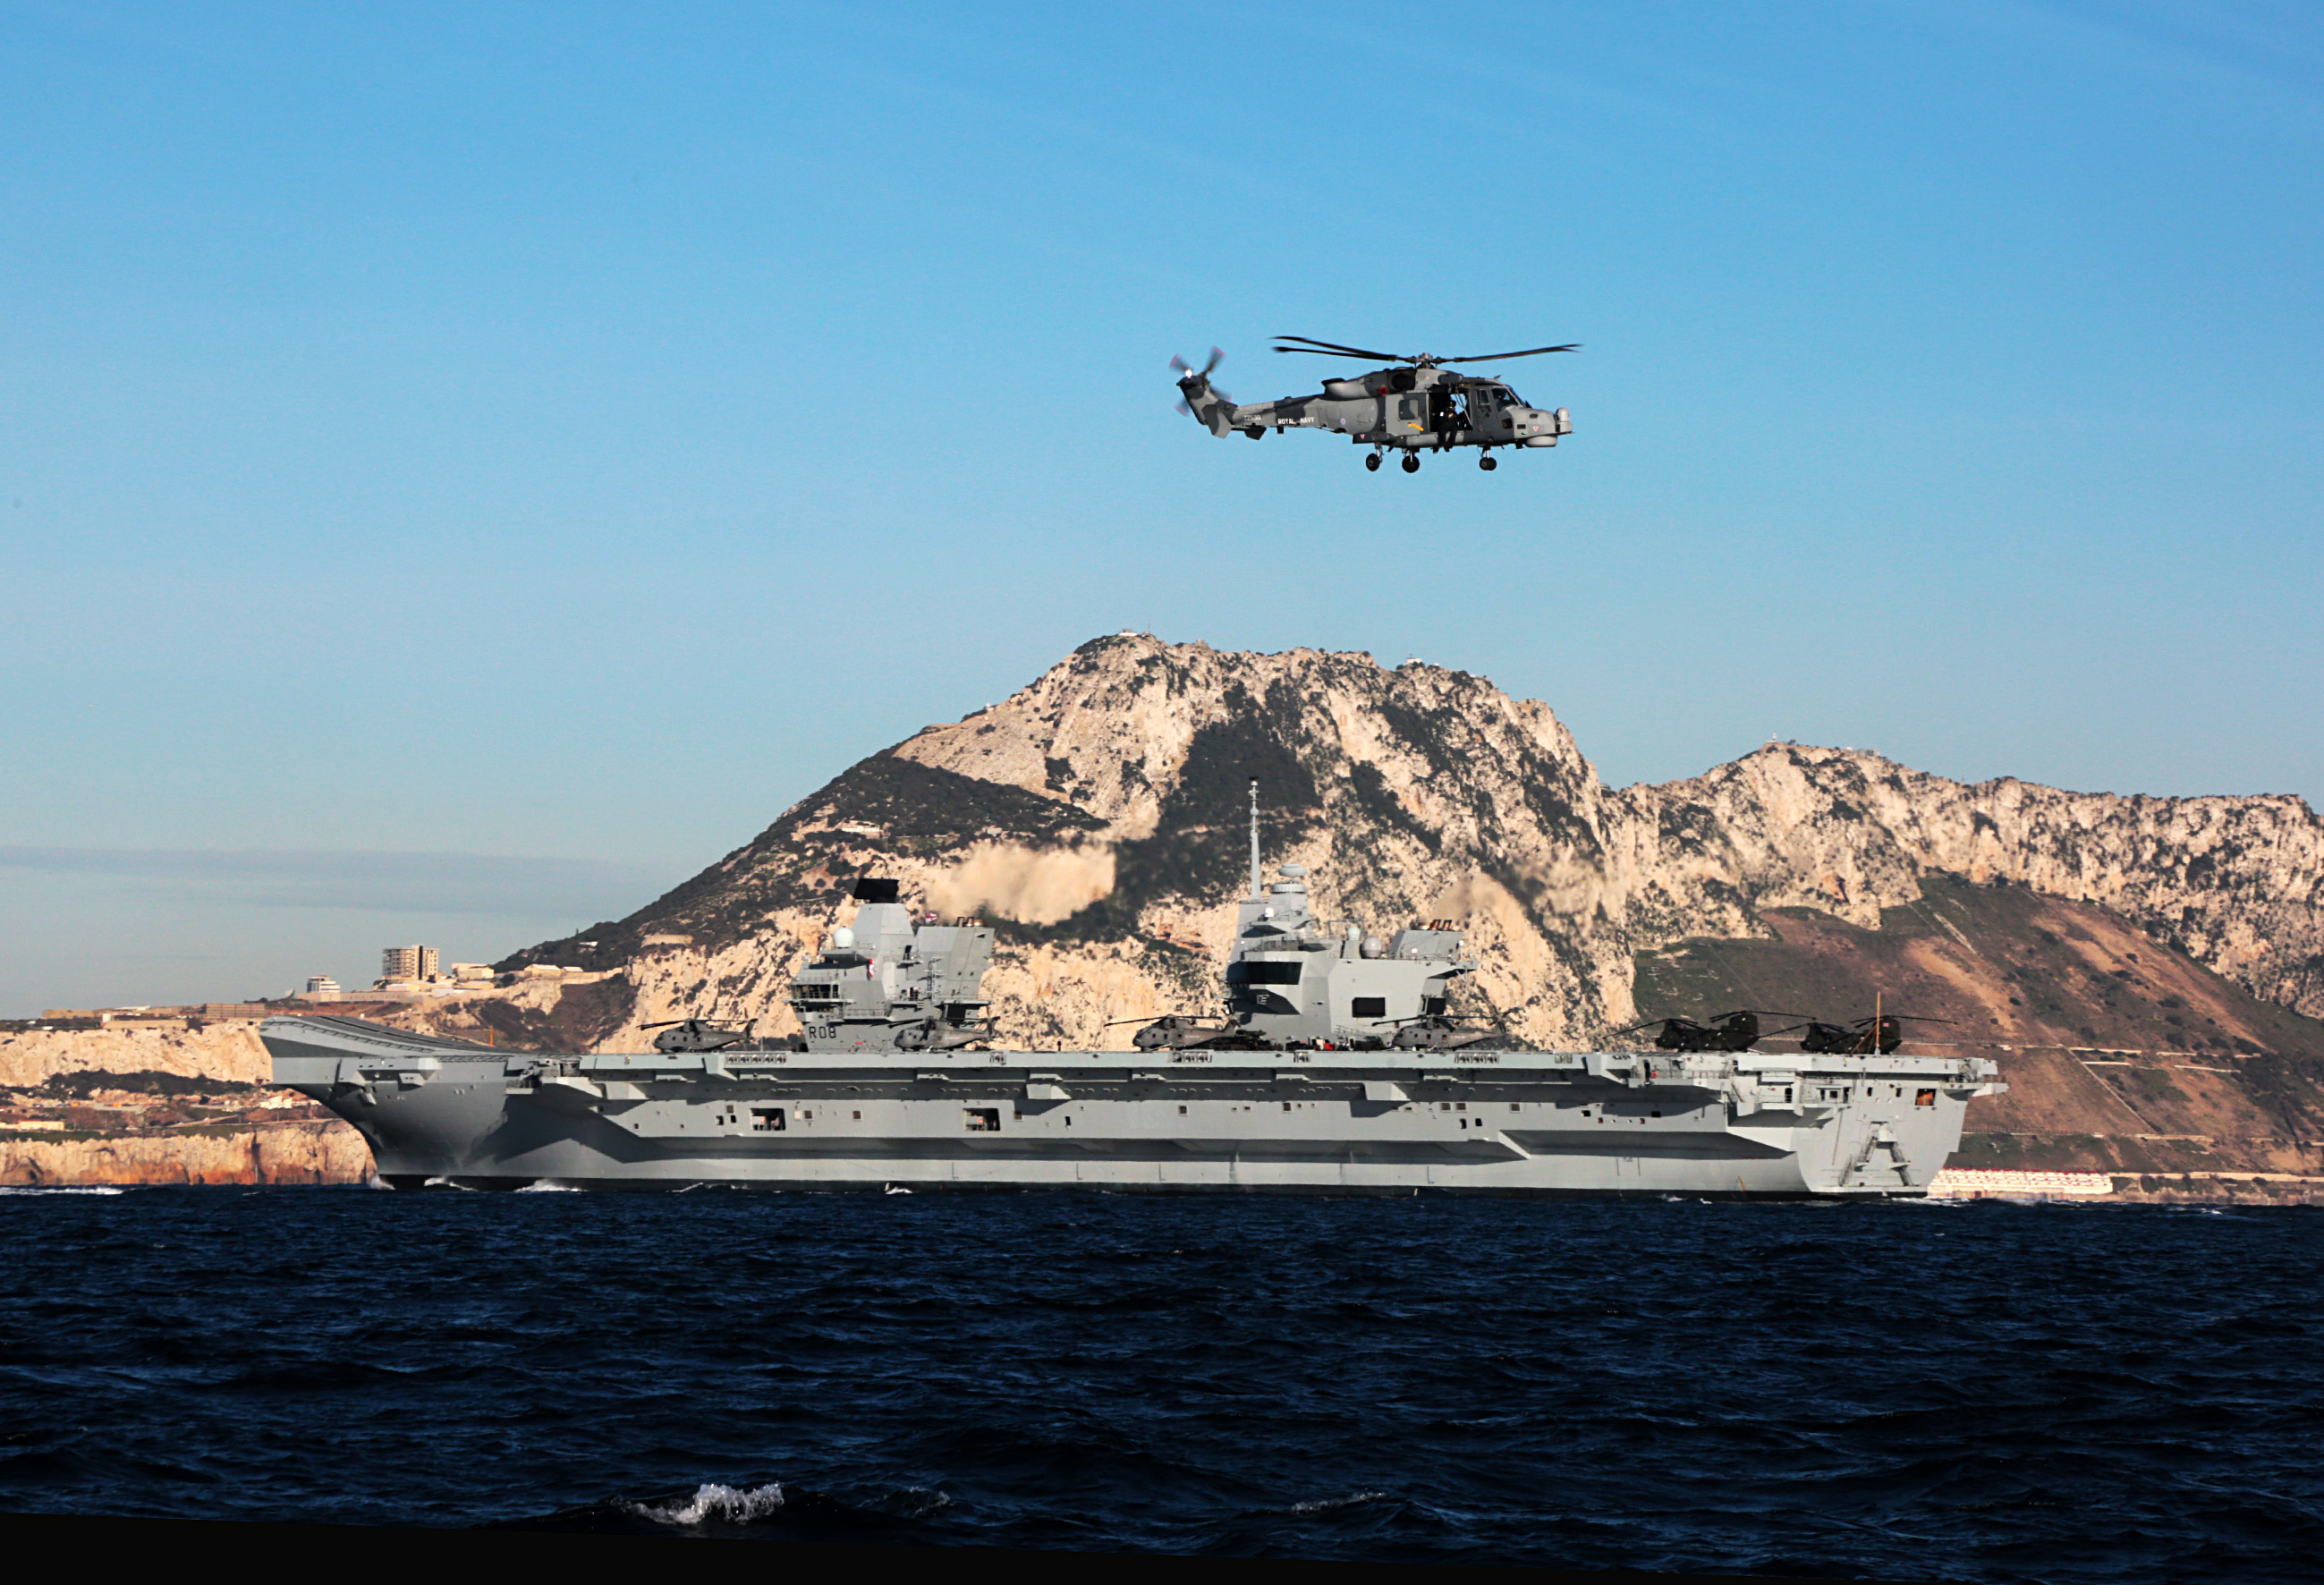 Portaaviones HMS Queen Elizabeth llegando a Gibraltar. Imagen tomada desde uno de los buques de apoyo (via Royal Navy) (15).jpg